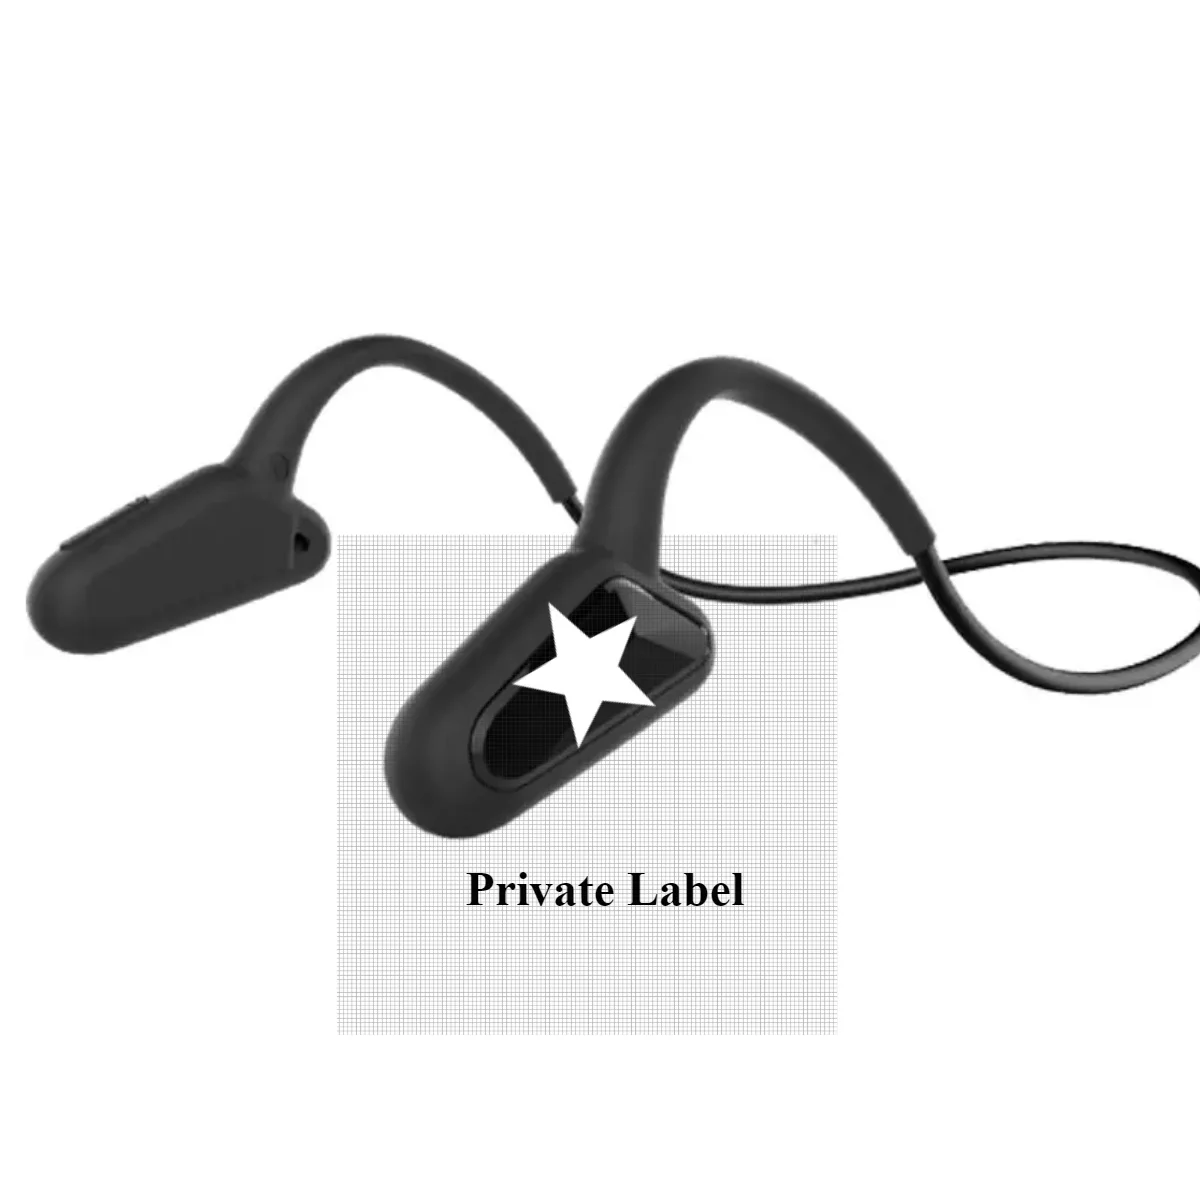 저렴한 OEM 공장 블루투스 이어폰 헤드폰 골전도 CY01 오리지널 블랙 프라이데이 선글라스 헤드폰